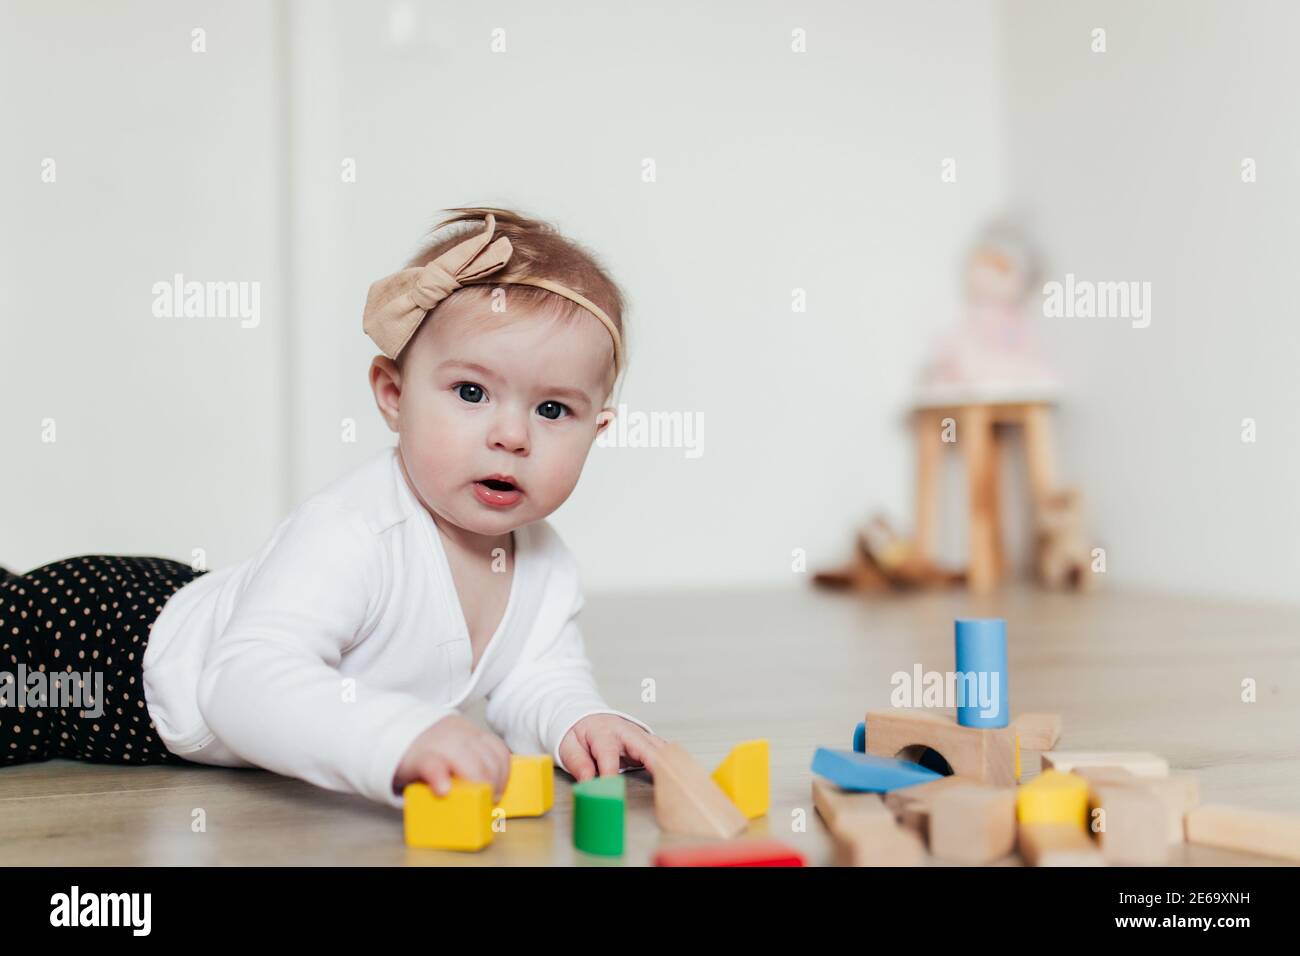 Petit enfant jouant avec des blocs de construction en bois colorés. Arrière-plan flou Banque D'Images